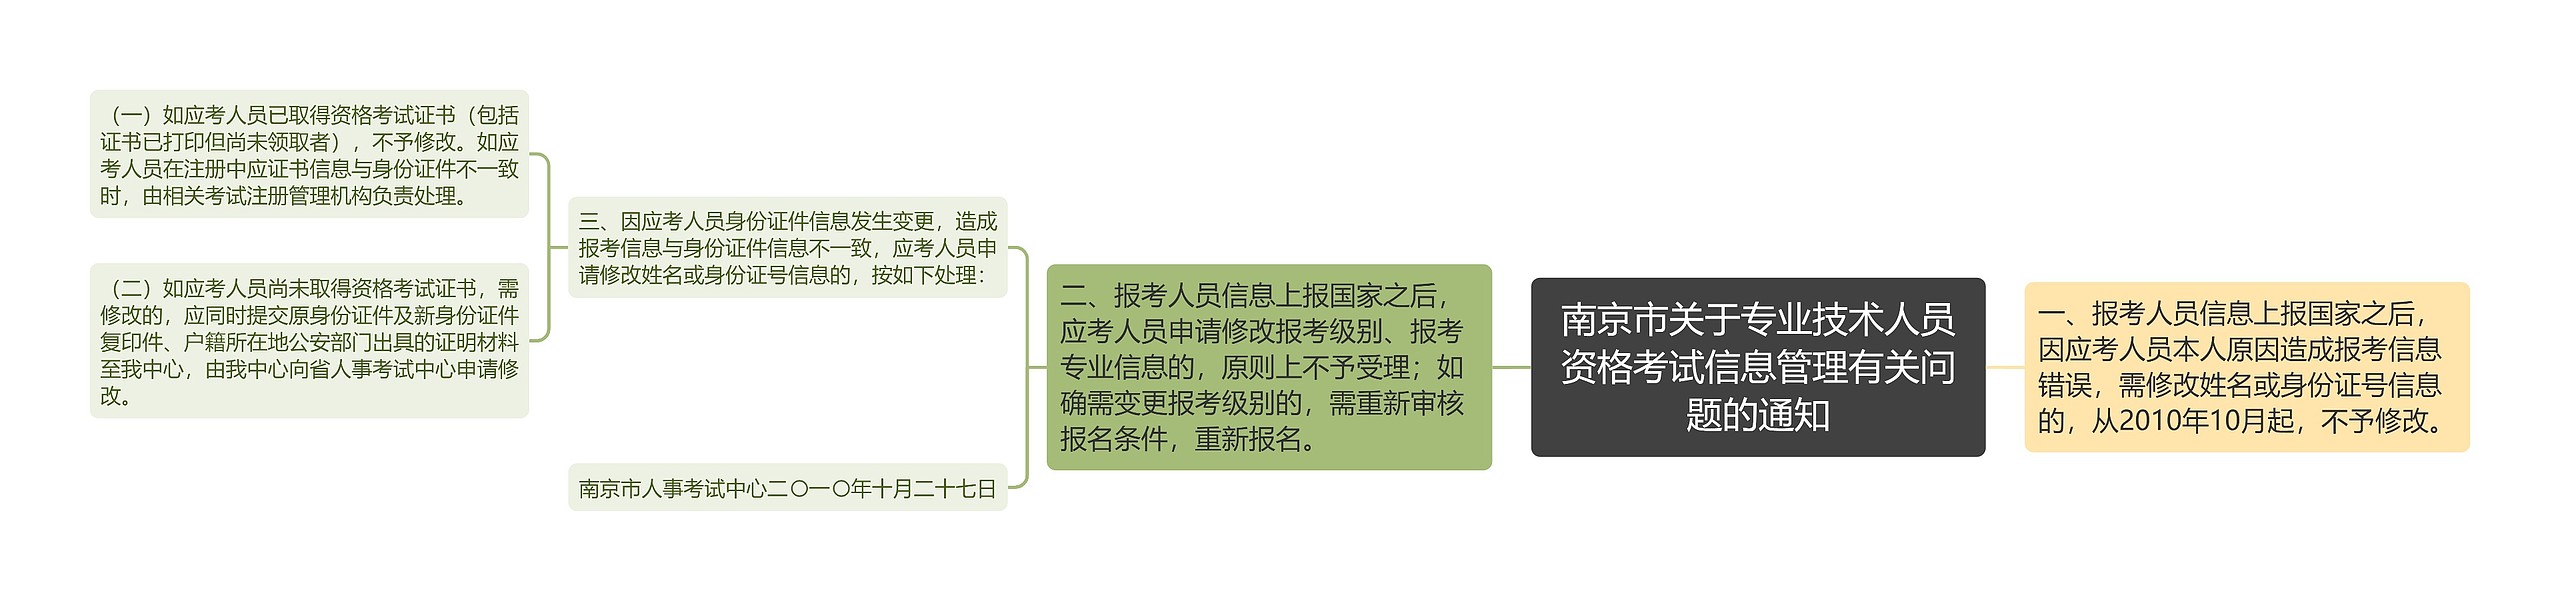 南京市关于专业技术人员资格考试信息管理有关问题的通知思维导图